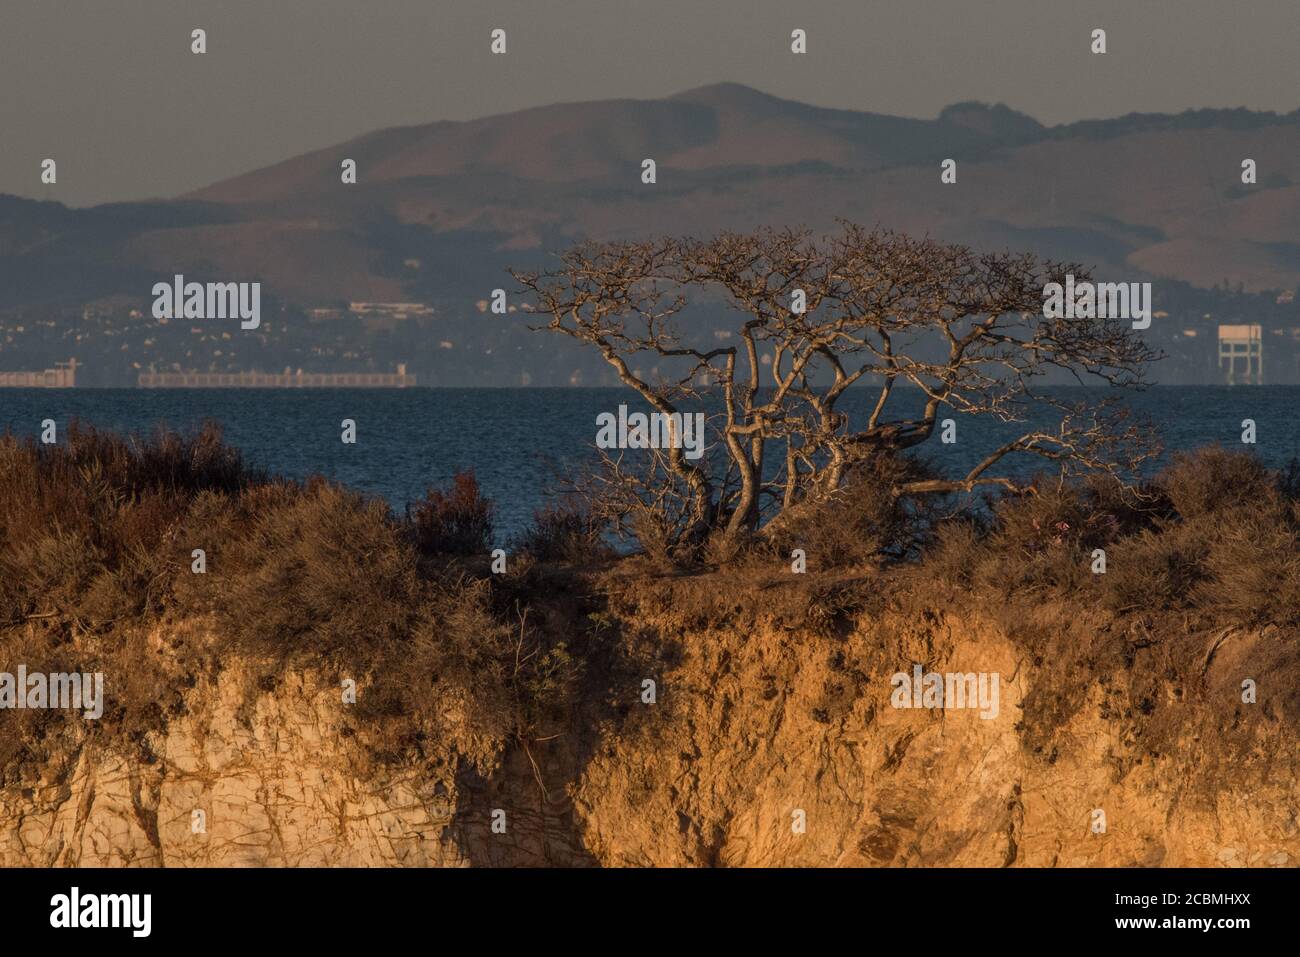 Un solo árbol con forma de garceta crece en una pequeña isla en la bahía de San Pablo, en el área de la bahía de San Francisco. Foto de stock